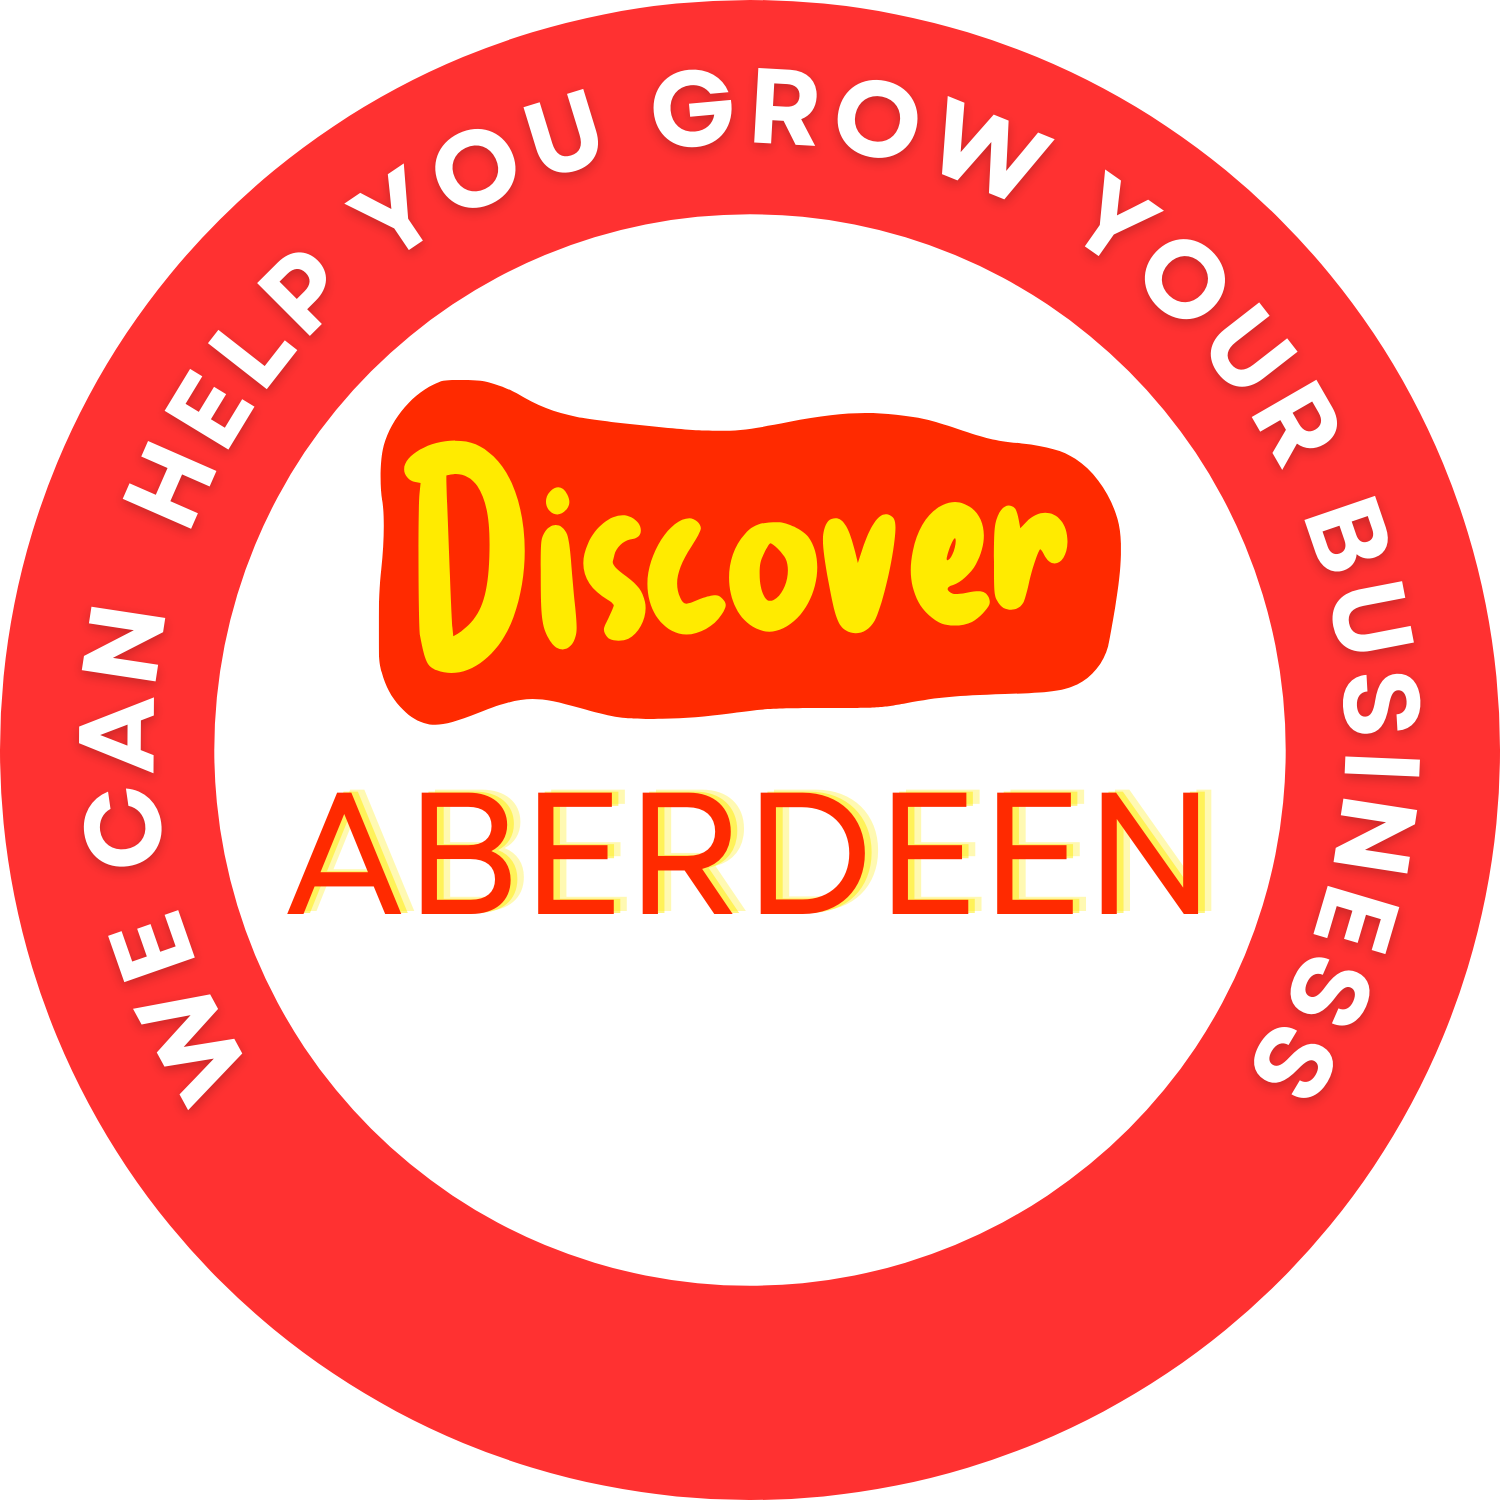 Discover Aberdeen